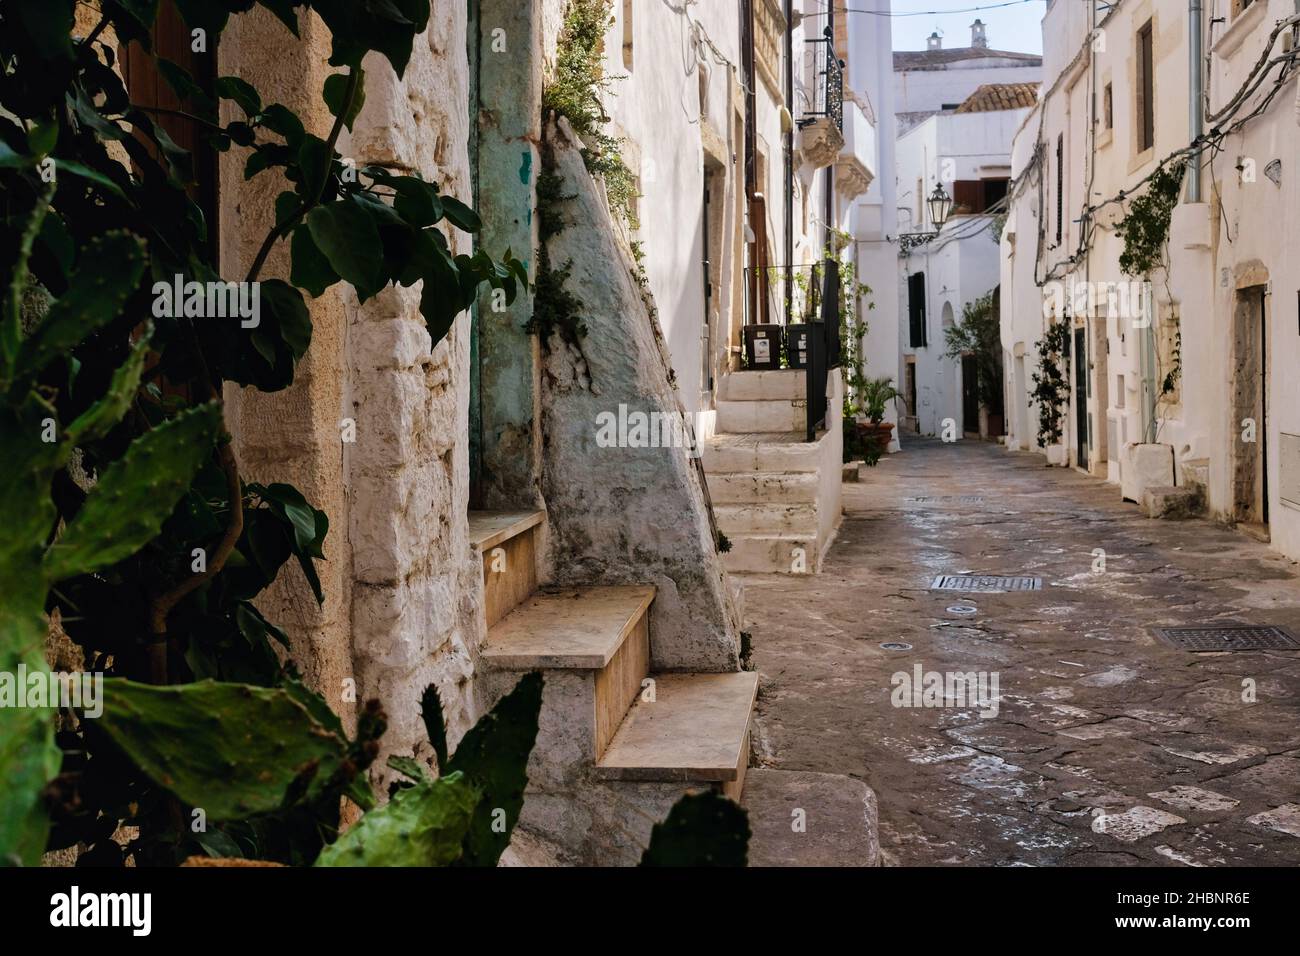 Apulia, Italie - allée dans la vieille ville blanche d'Ostuni, (Bari) Puglia, dans le sud de l'Italie Banque D'Images